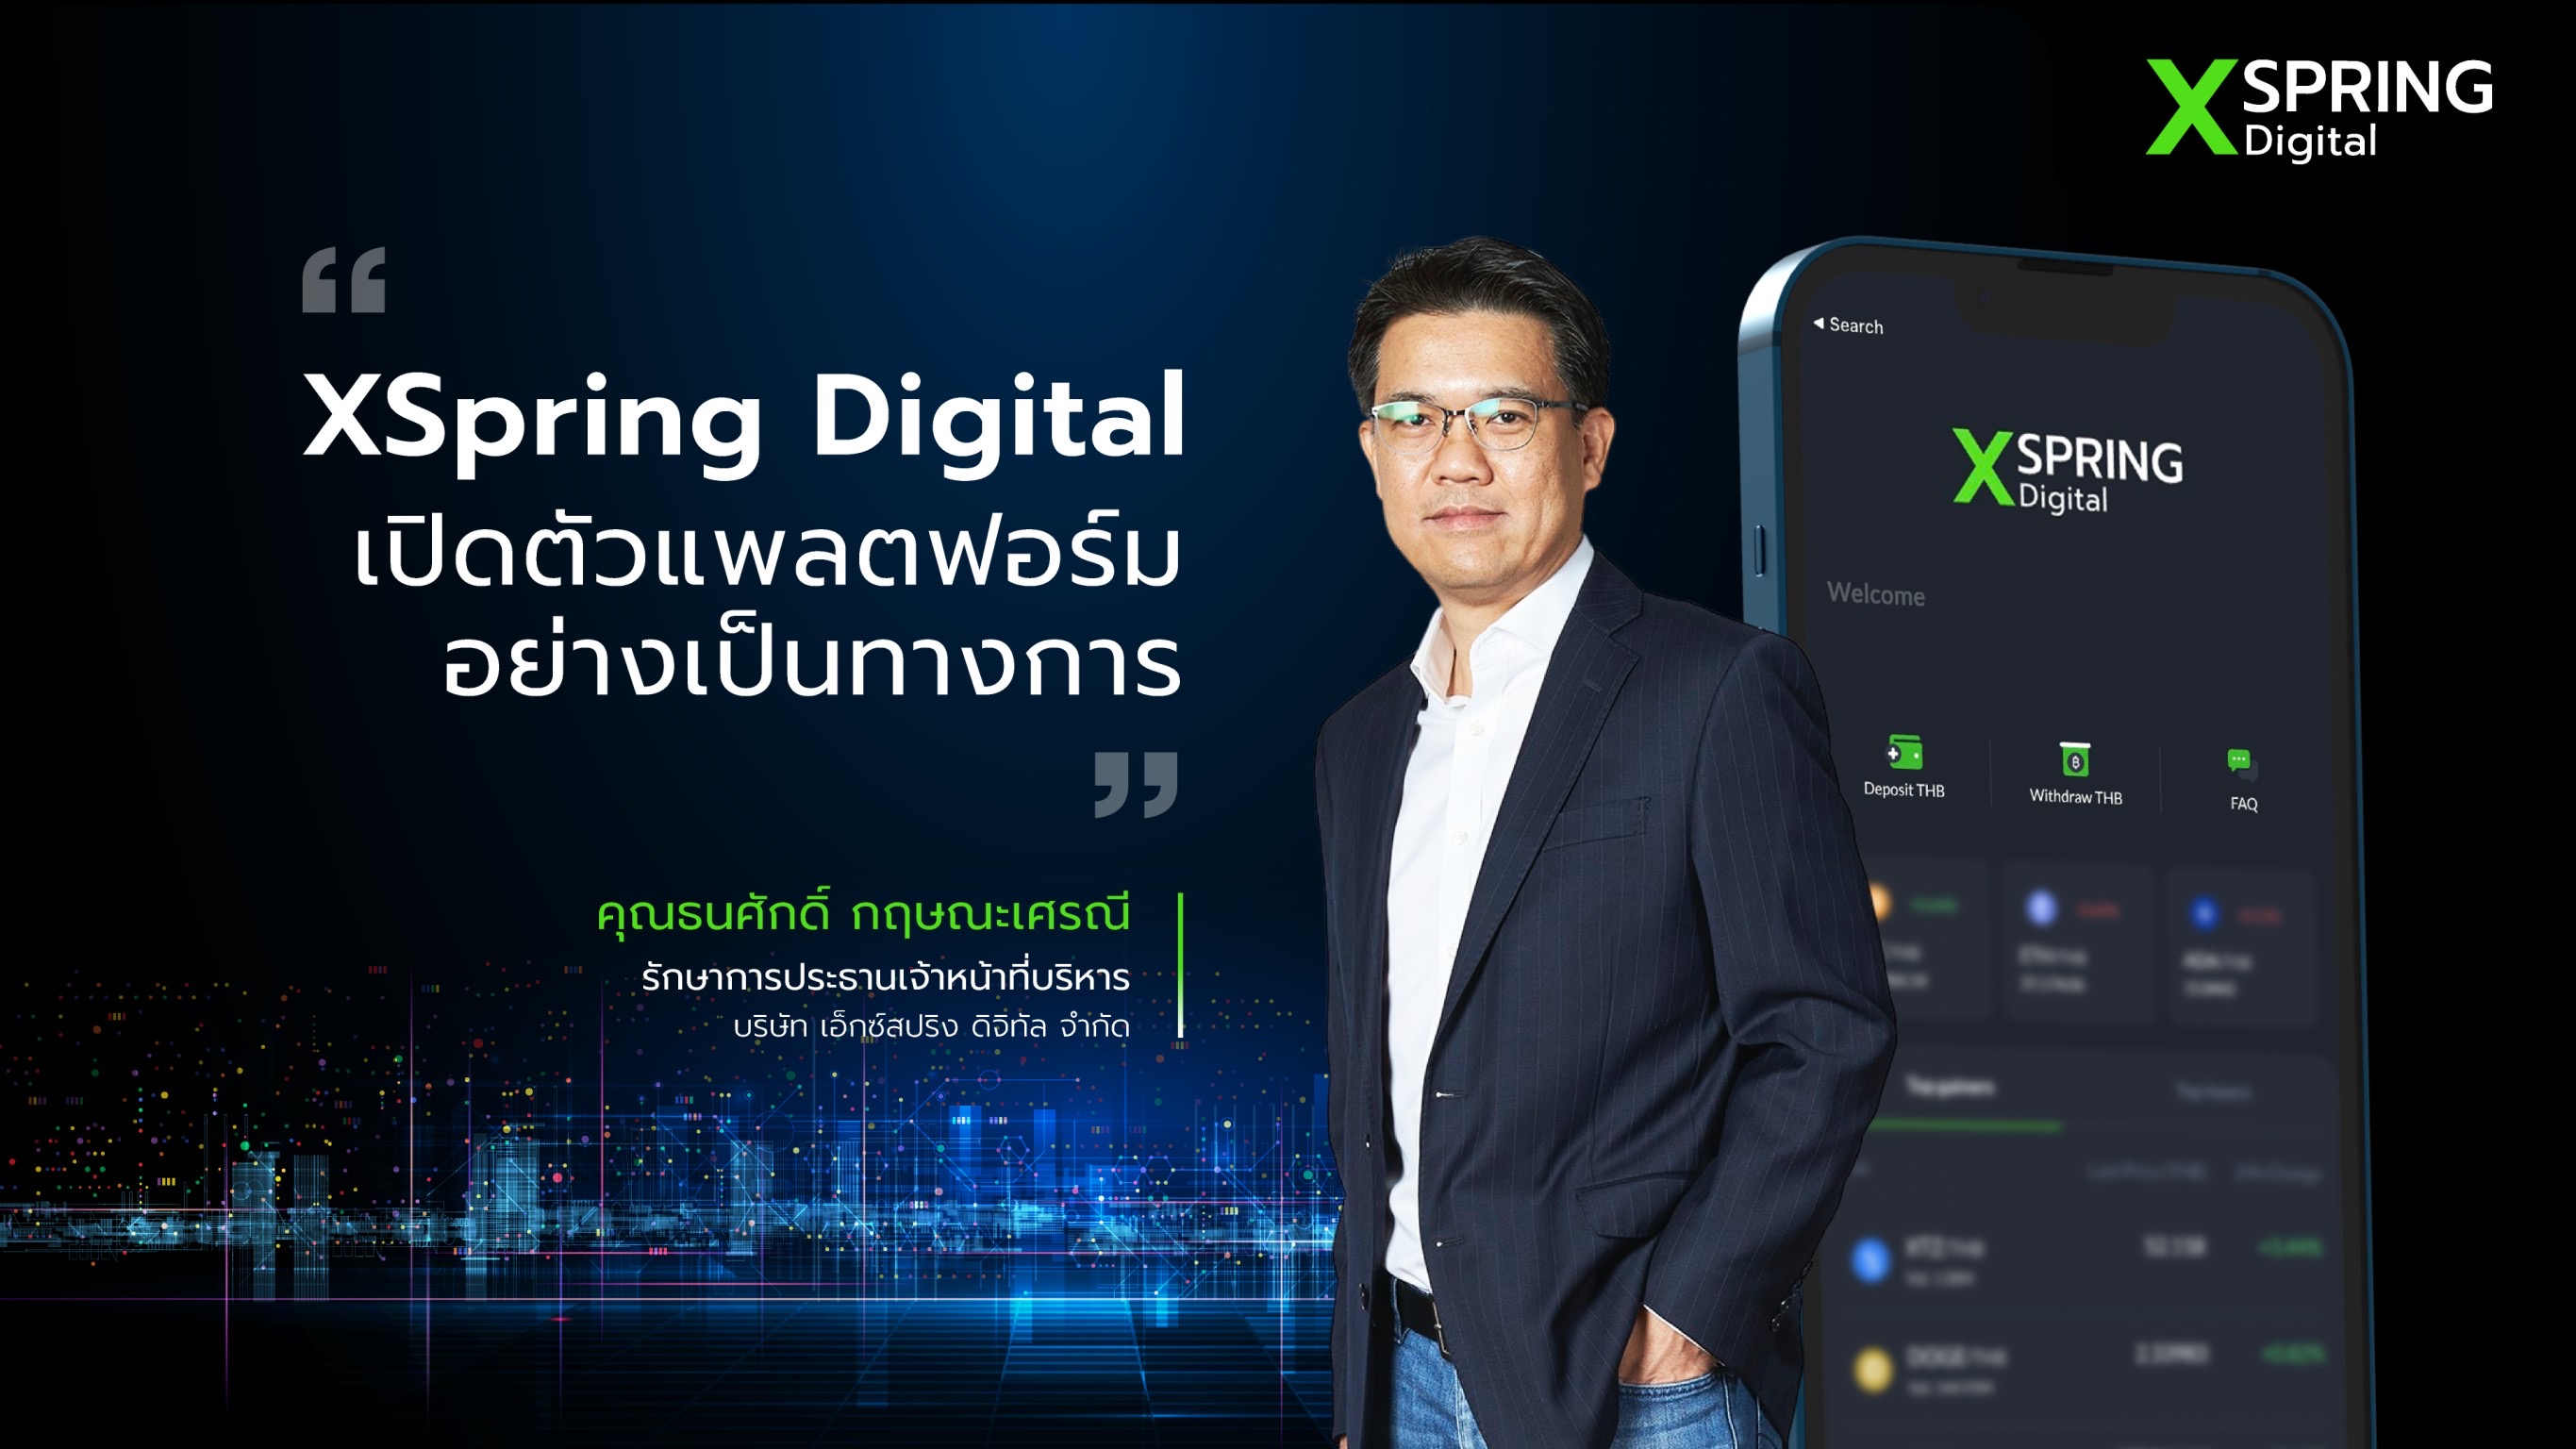 XSpring Digital เปิดตัวแพลตฟอร์ม  สินทรัพย์ดิจิทัลแบบครบวงจร  ตั้งเป้าขึ้นแท่น 1 ใน 3 ภายใน 3 ปี